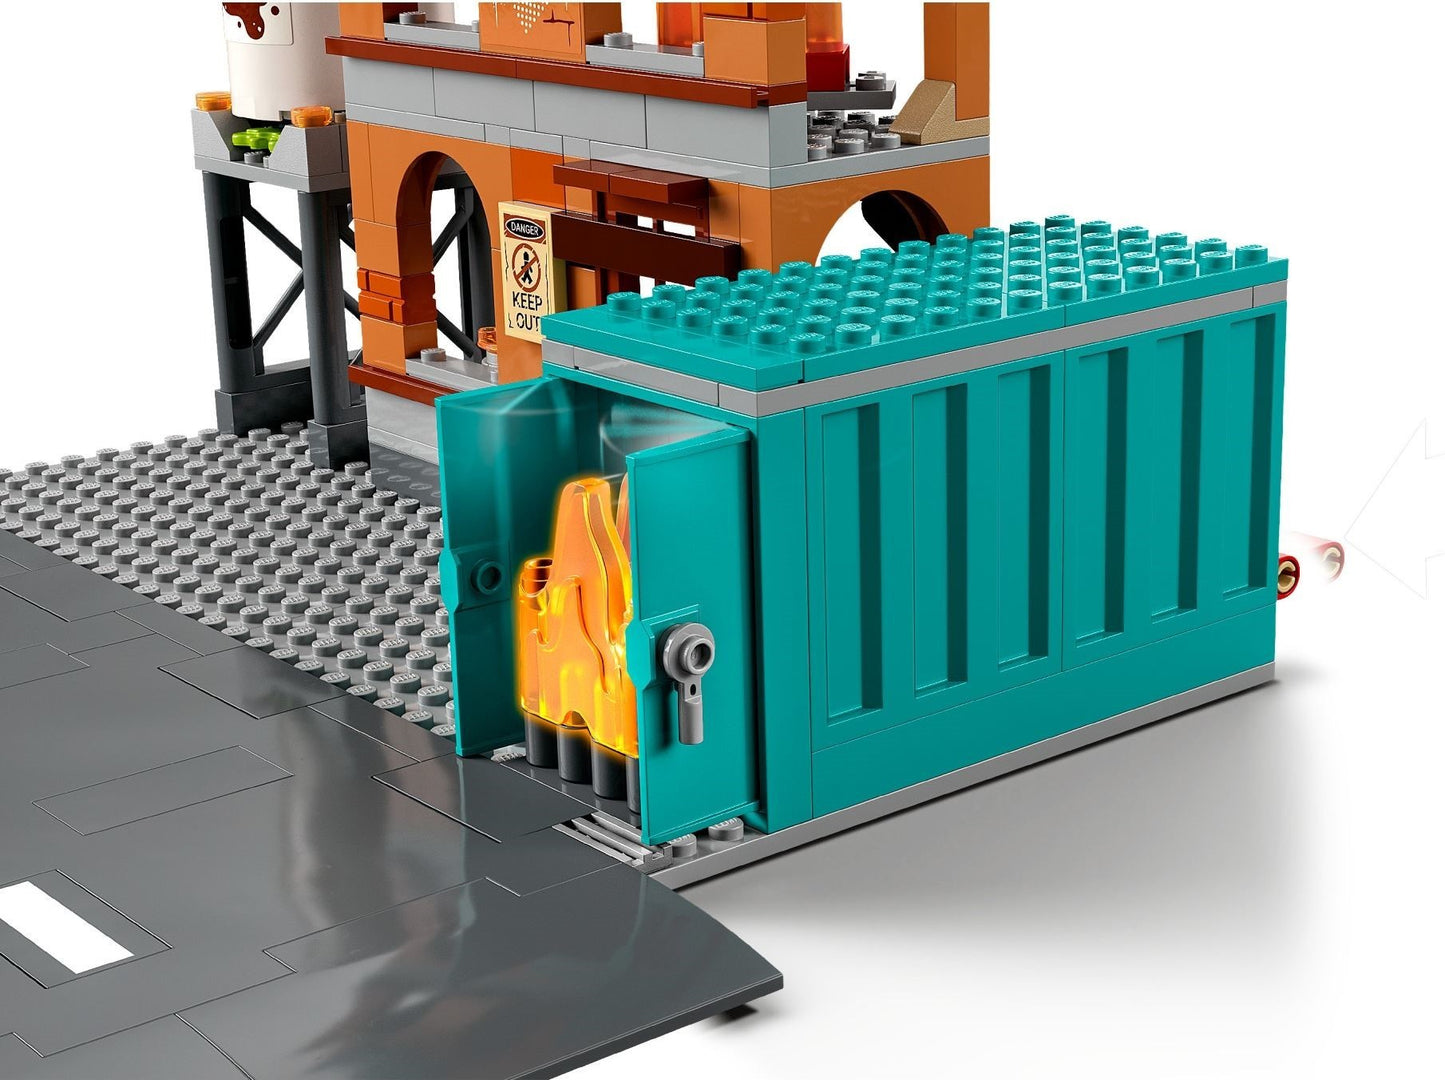 60321 - LEGO City Fire - Brigada de Pompieri